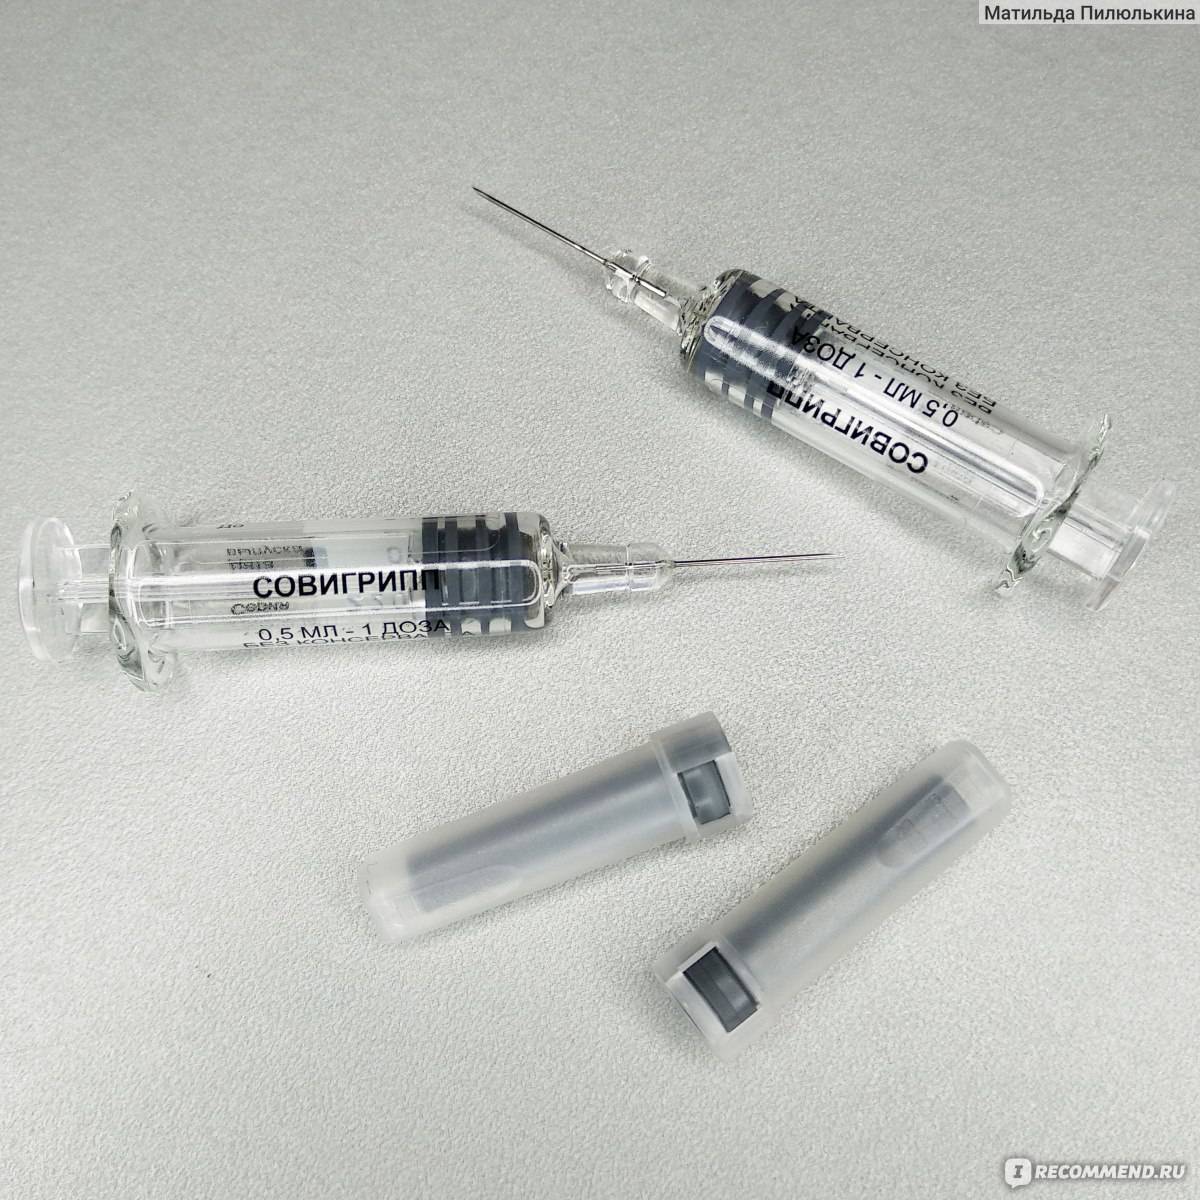 Вакцина ультрикс квадри купить - прямые поставки гриппозной четырёхвалентной вакцины от ммк формед | инструкция по применению